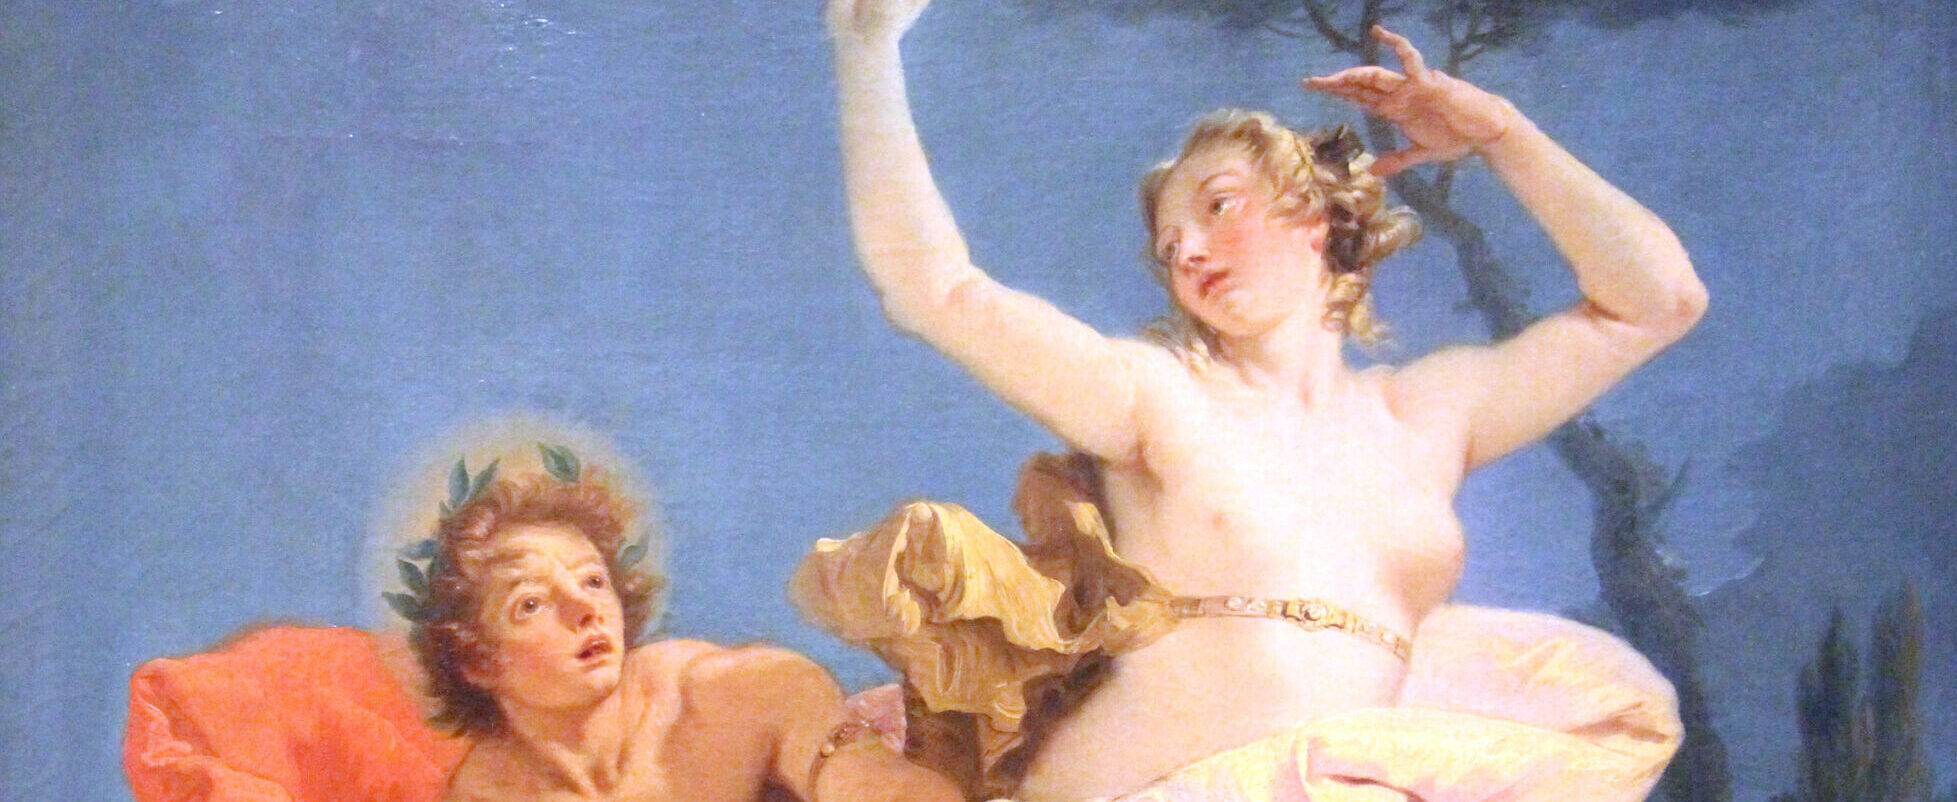 Dettaglio tratto dal dipinto di Giambattista Tiepolo raffigurante Apollo e Dafne.